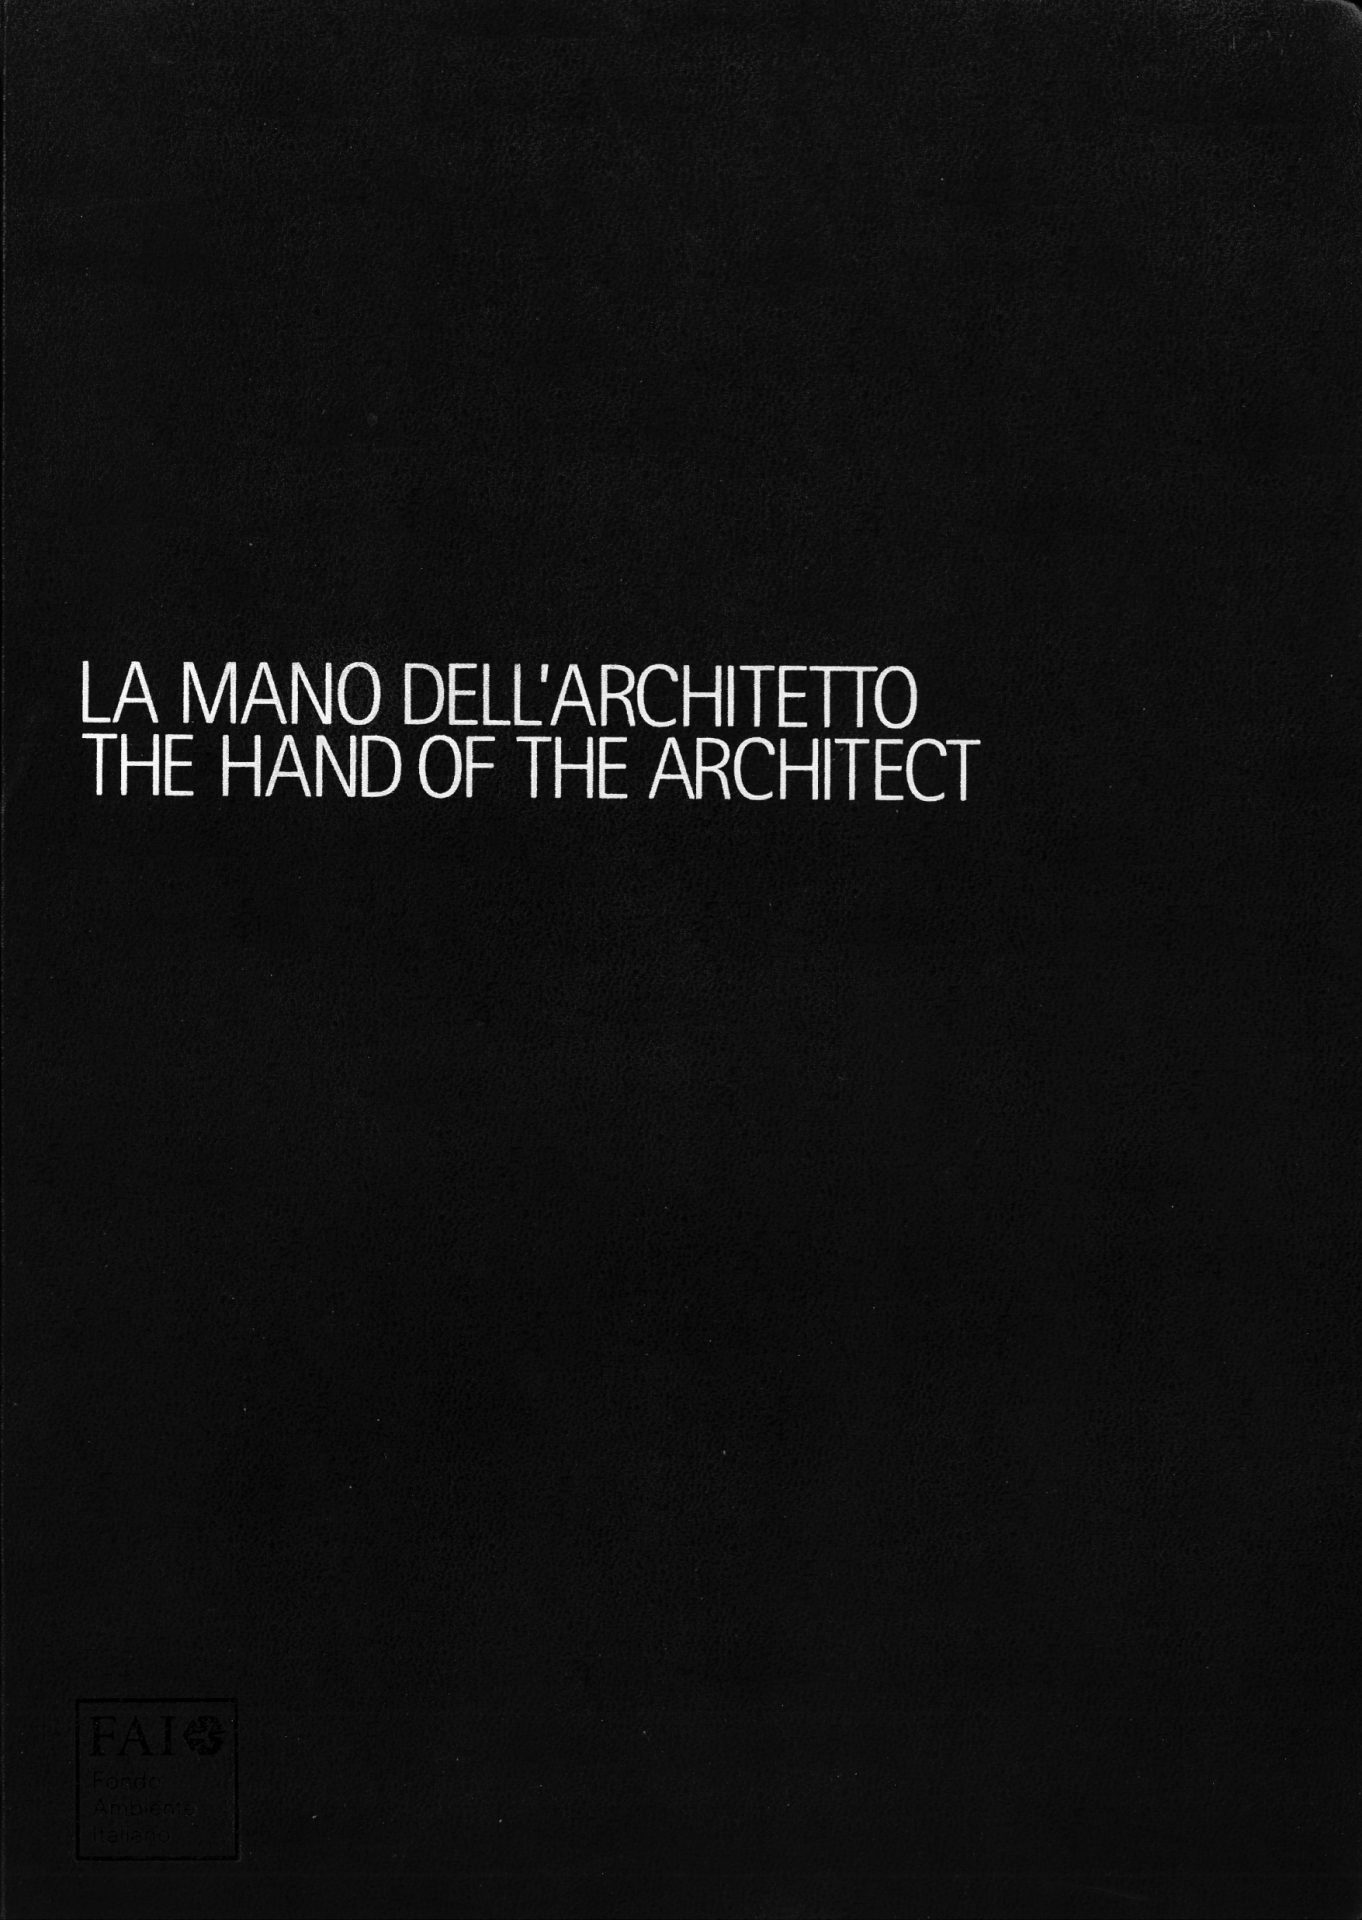 La mano dell'architetto - Corvino + Multari